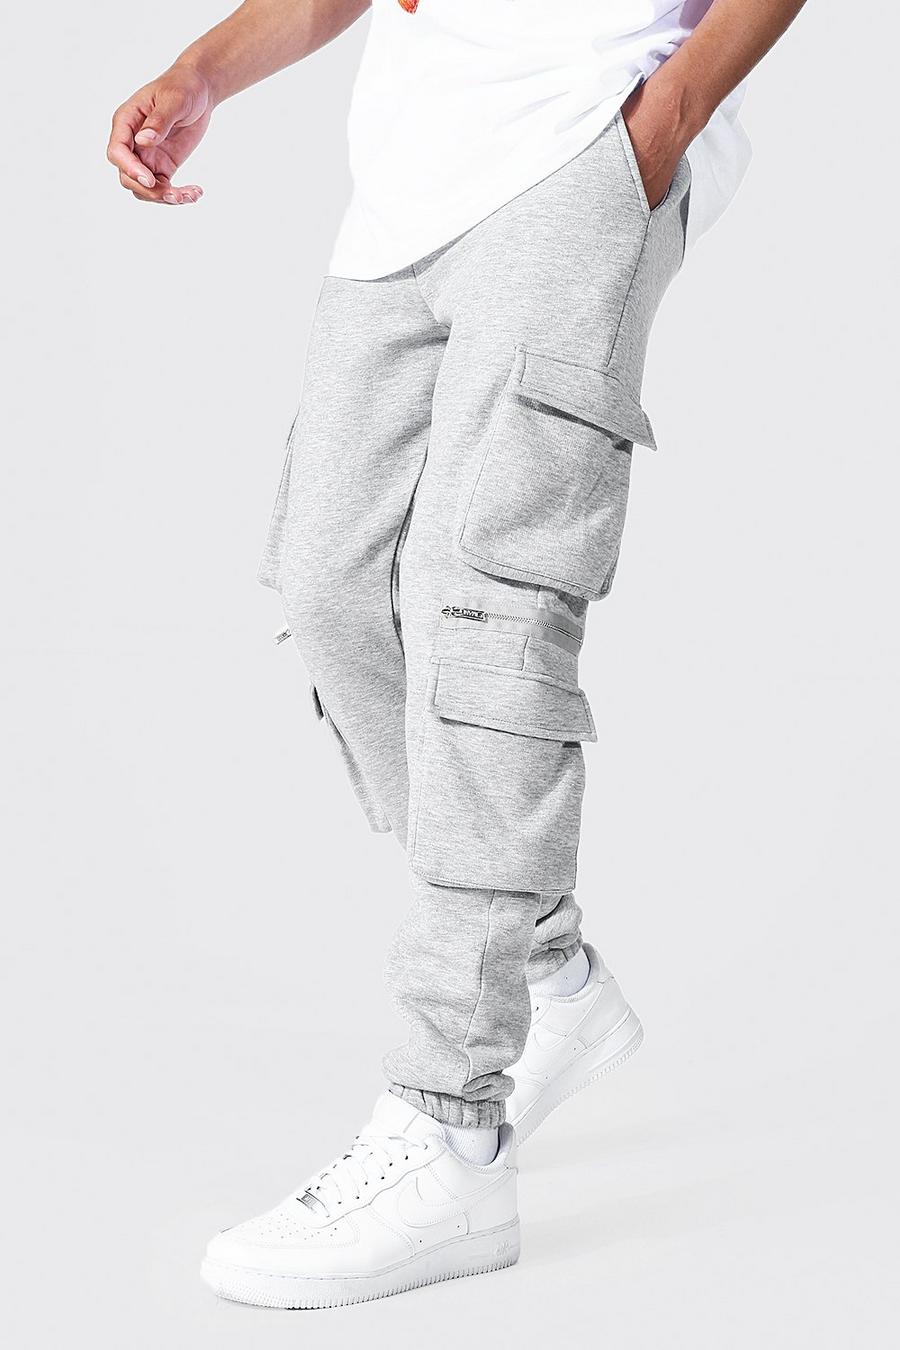 Pantaloni tuta cargo Tall in jersey con cerniera, Grigio mélange grey